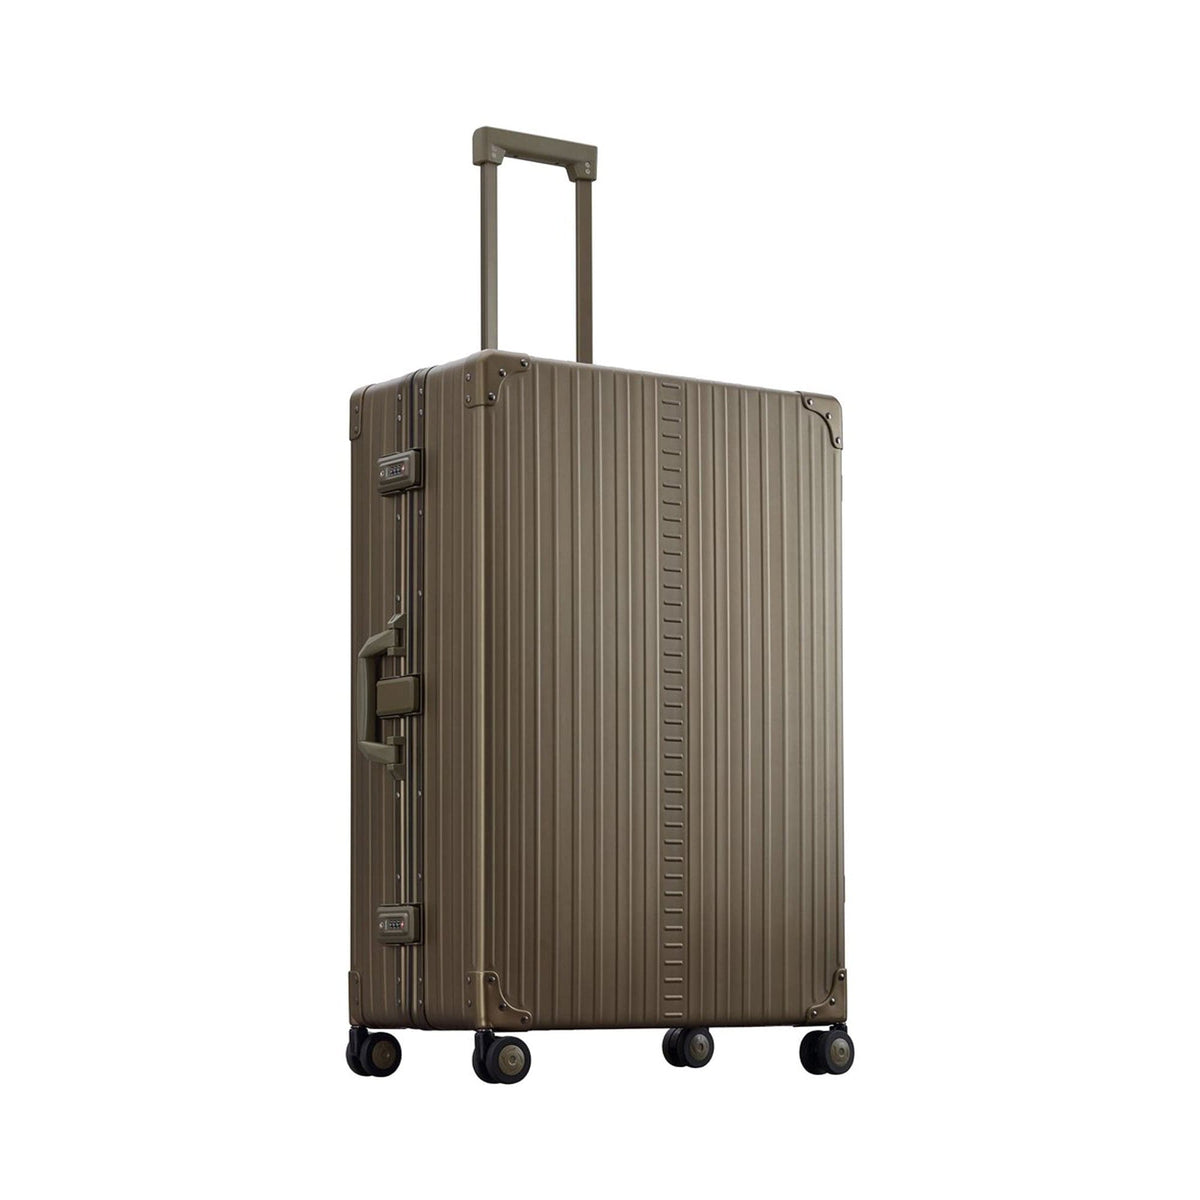 Aleon 32" Macro Aluminum Hardside Traveler Checked Luggage